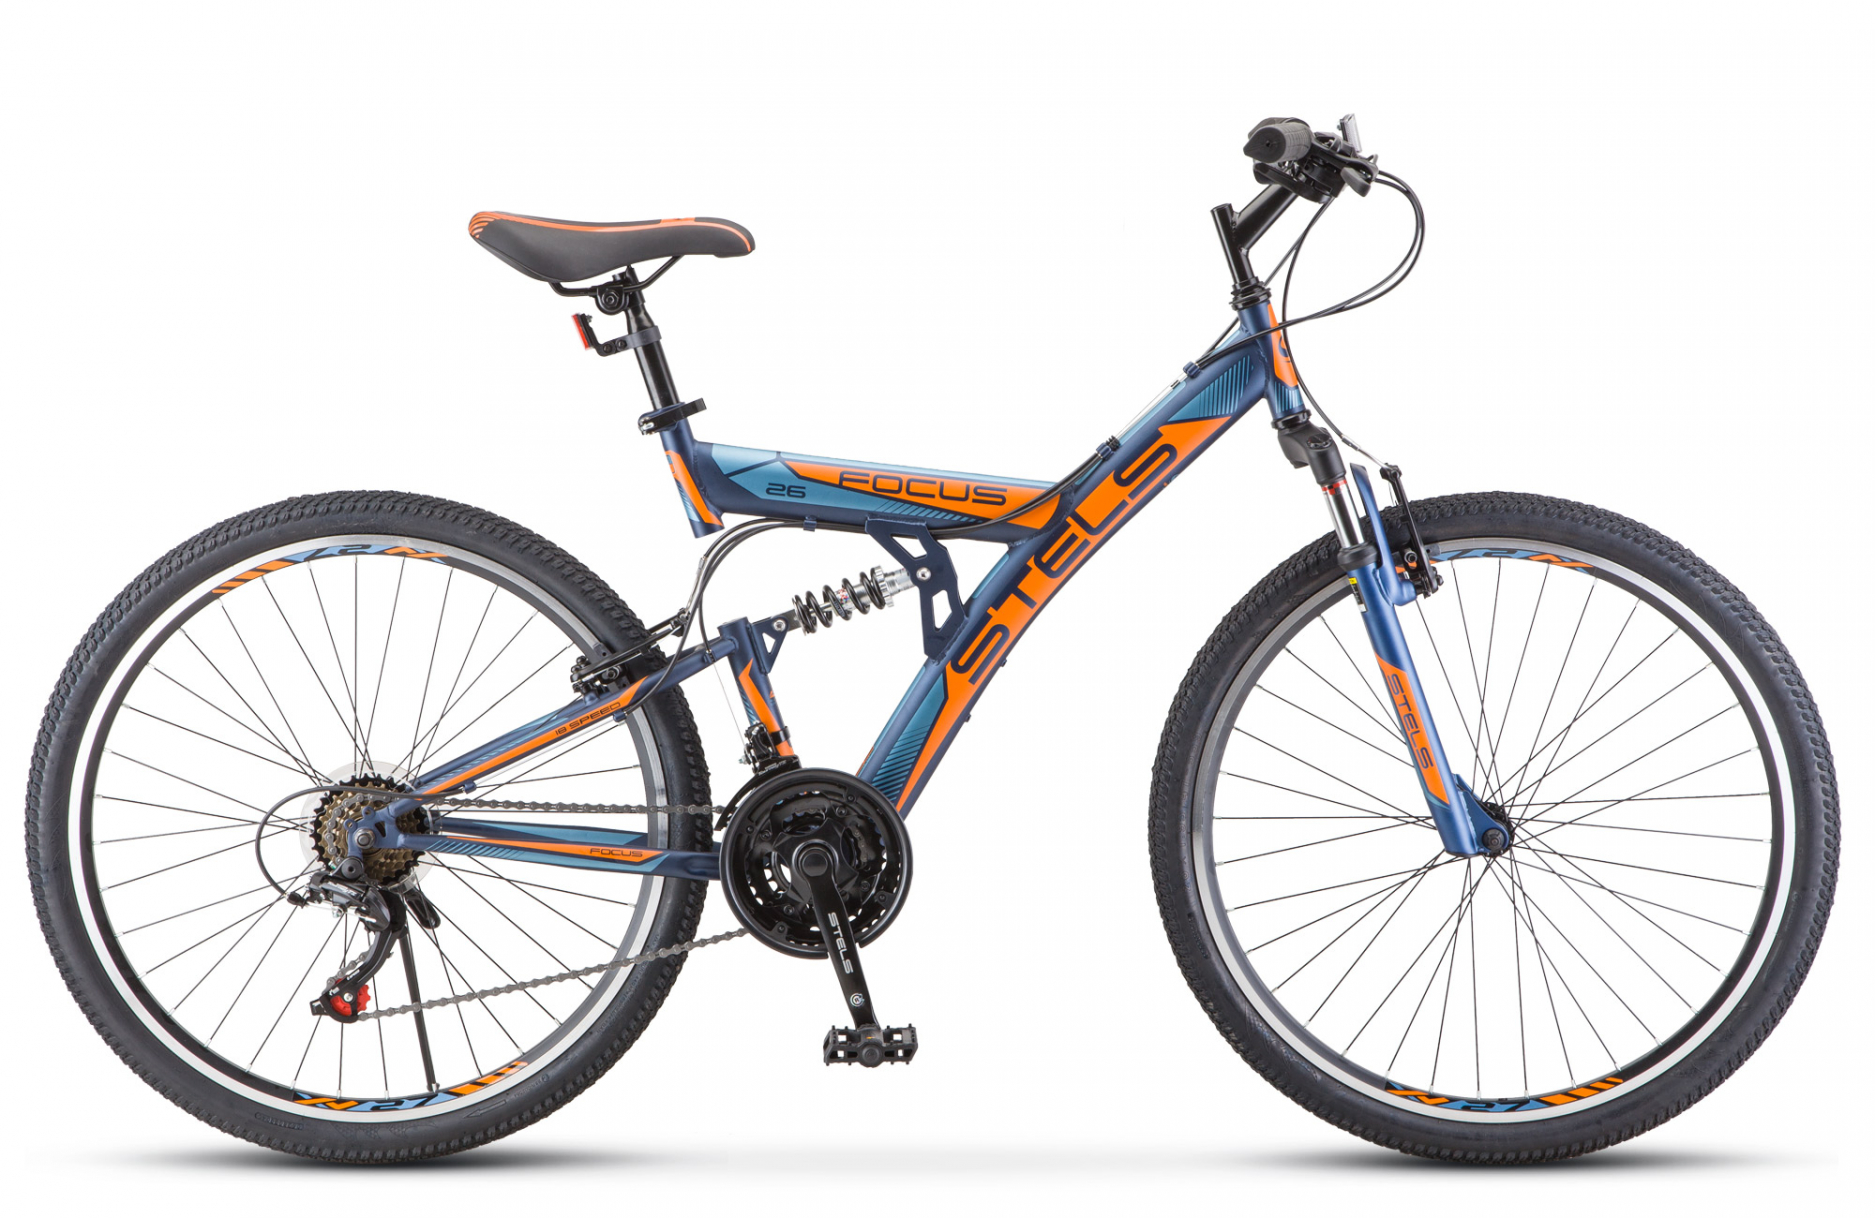 Велосипед 26 горный STELS Focus V (2020) кол скор 18 рама сталь 18 темно синий, оранжевый